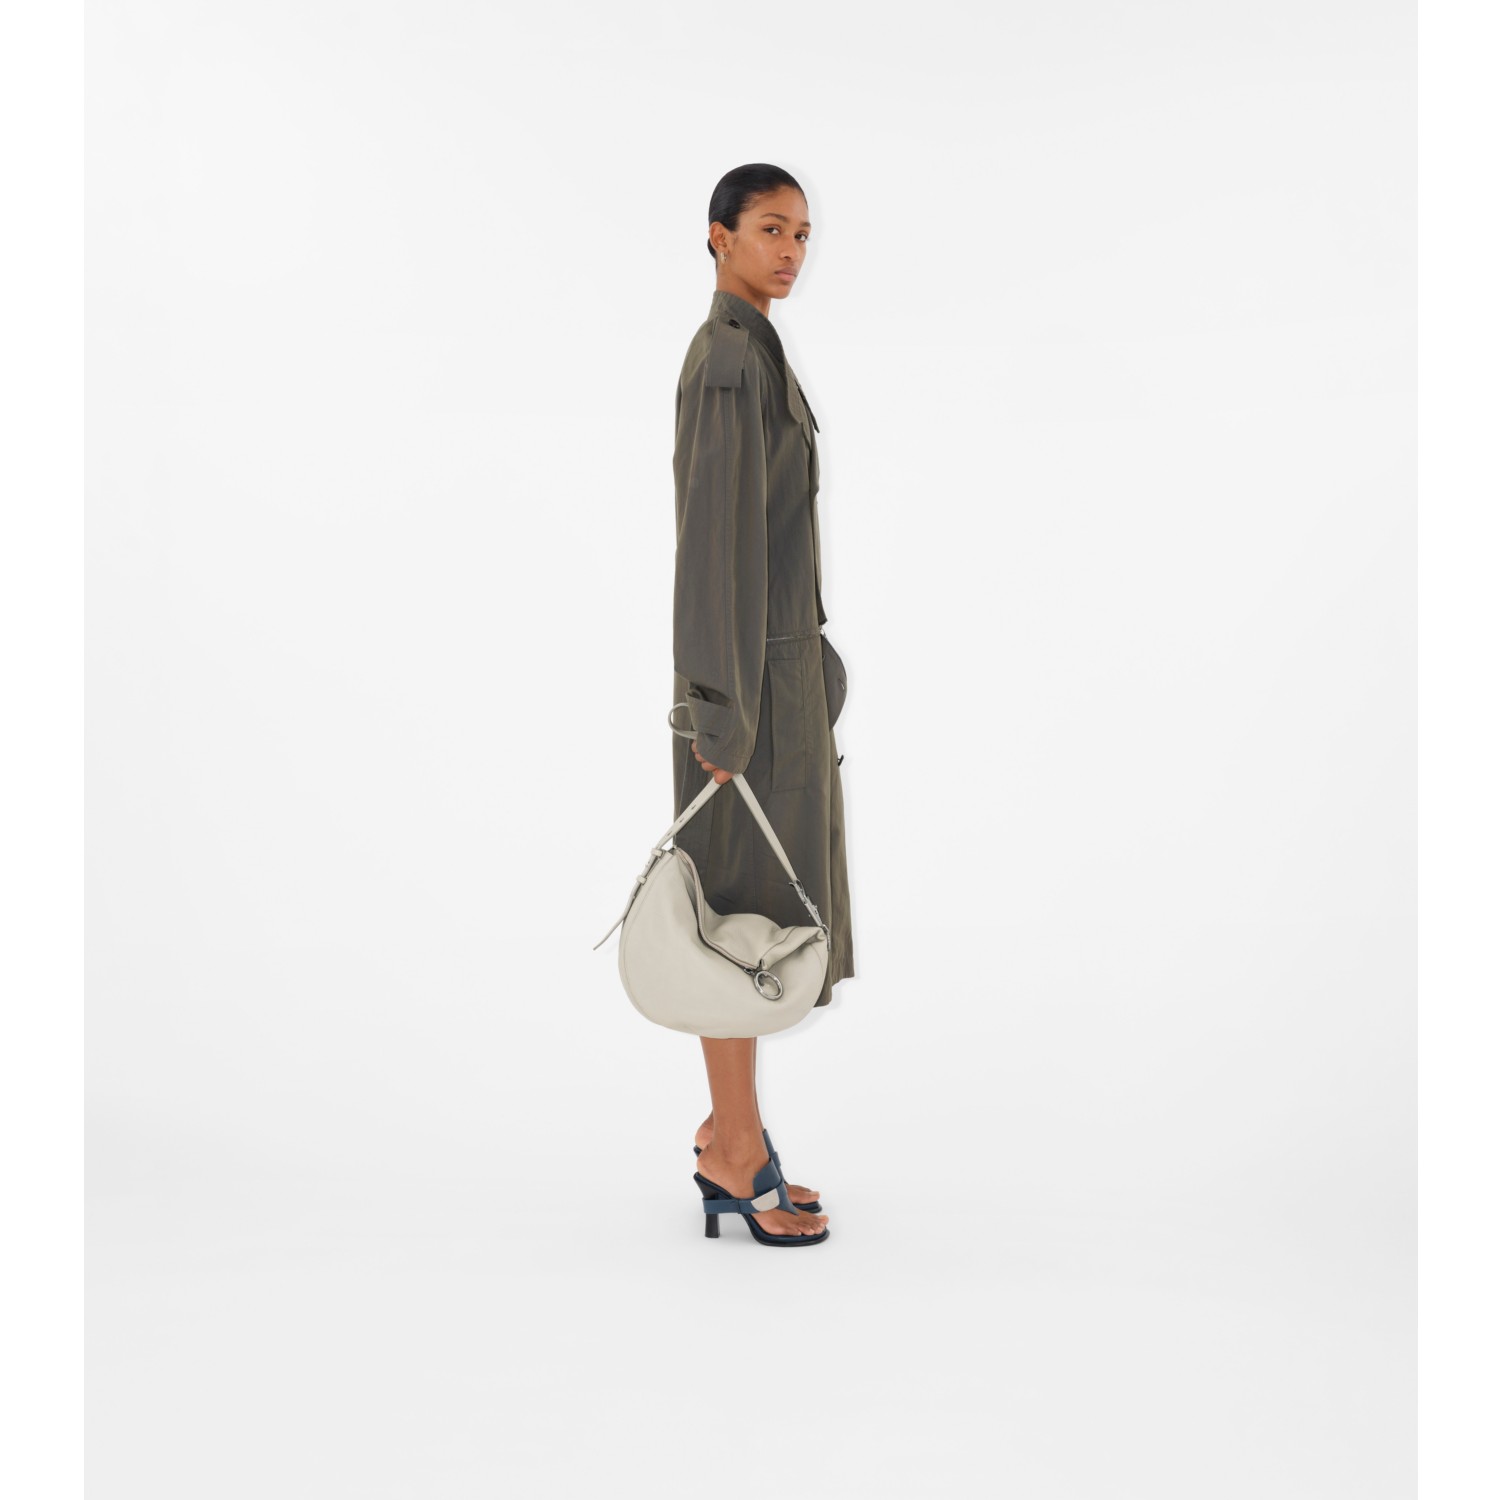 Vestido estilo trench coat en algodón y lino